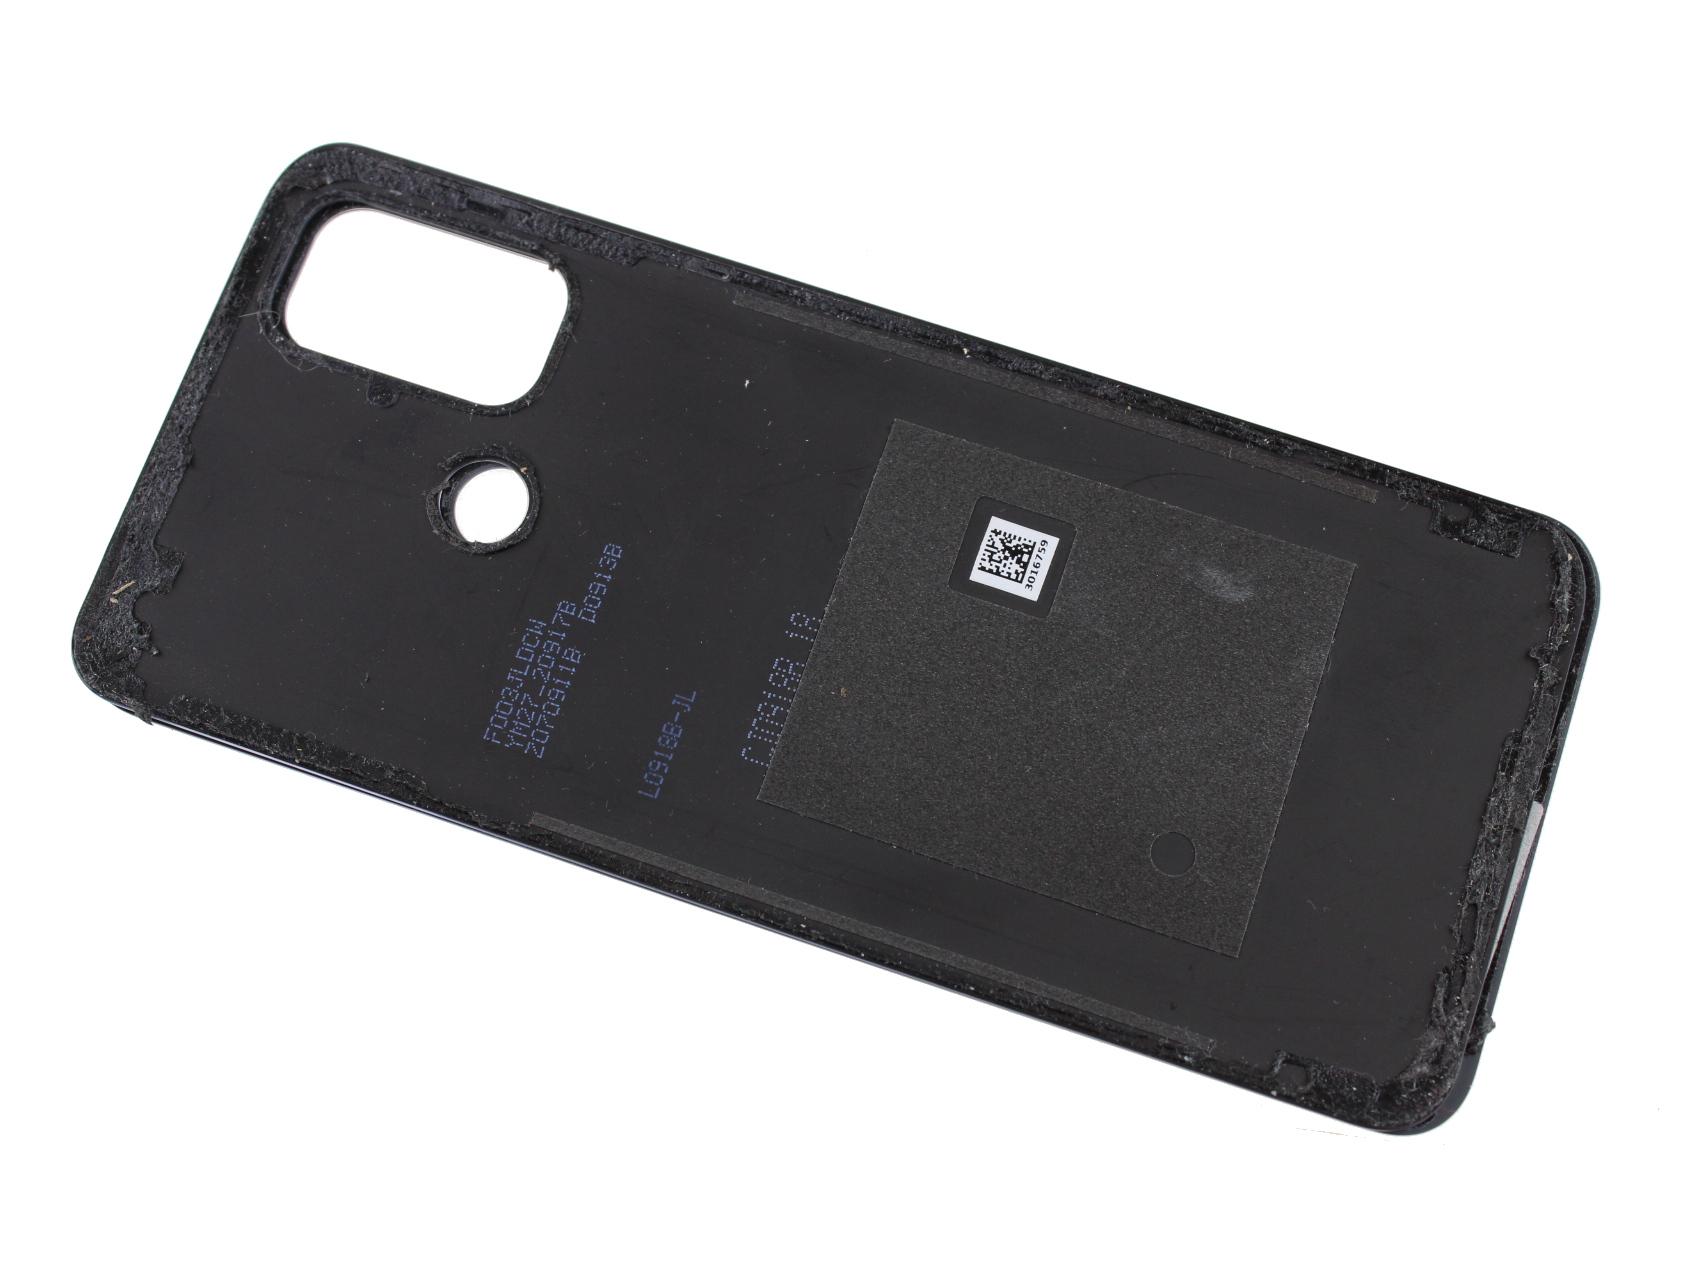 Originál kryt baterie Oppo A53 modrý - demontovaný díl